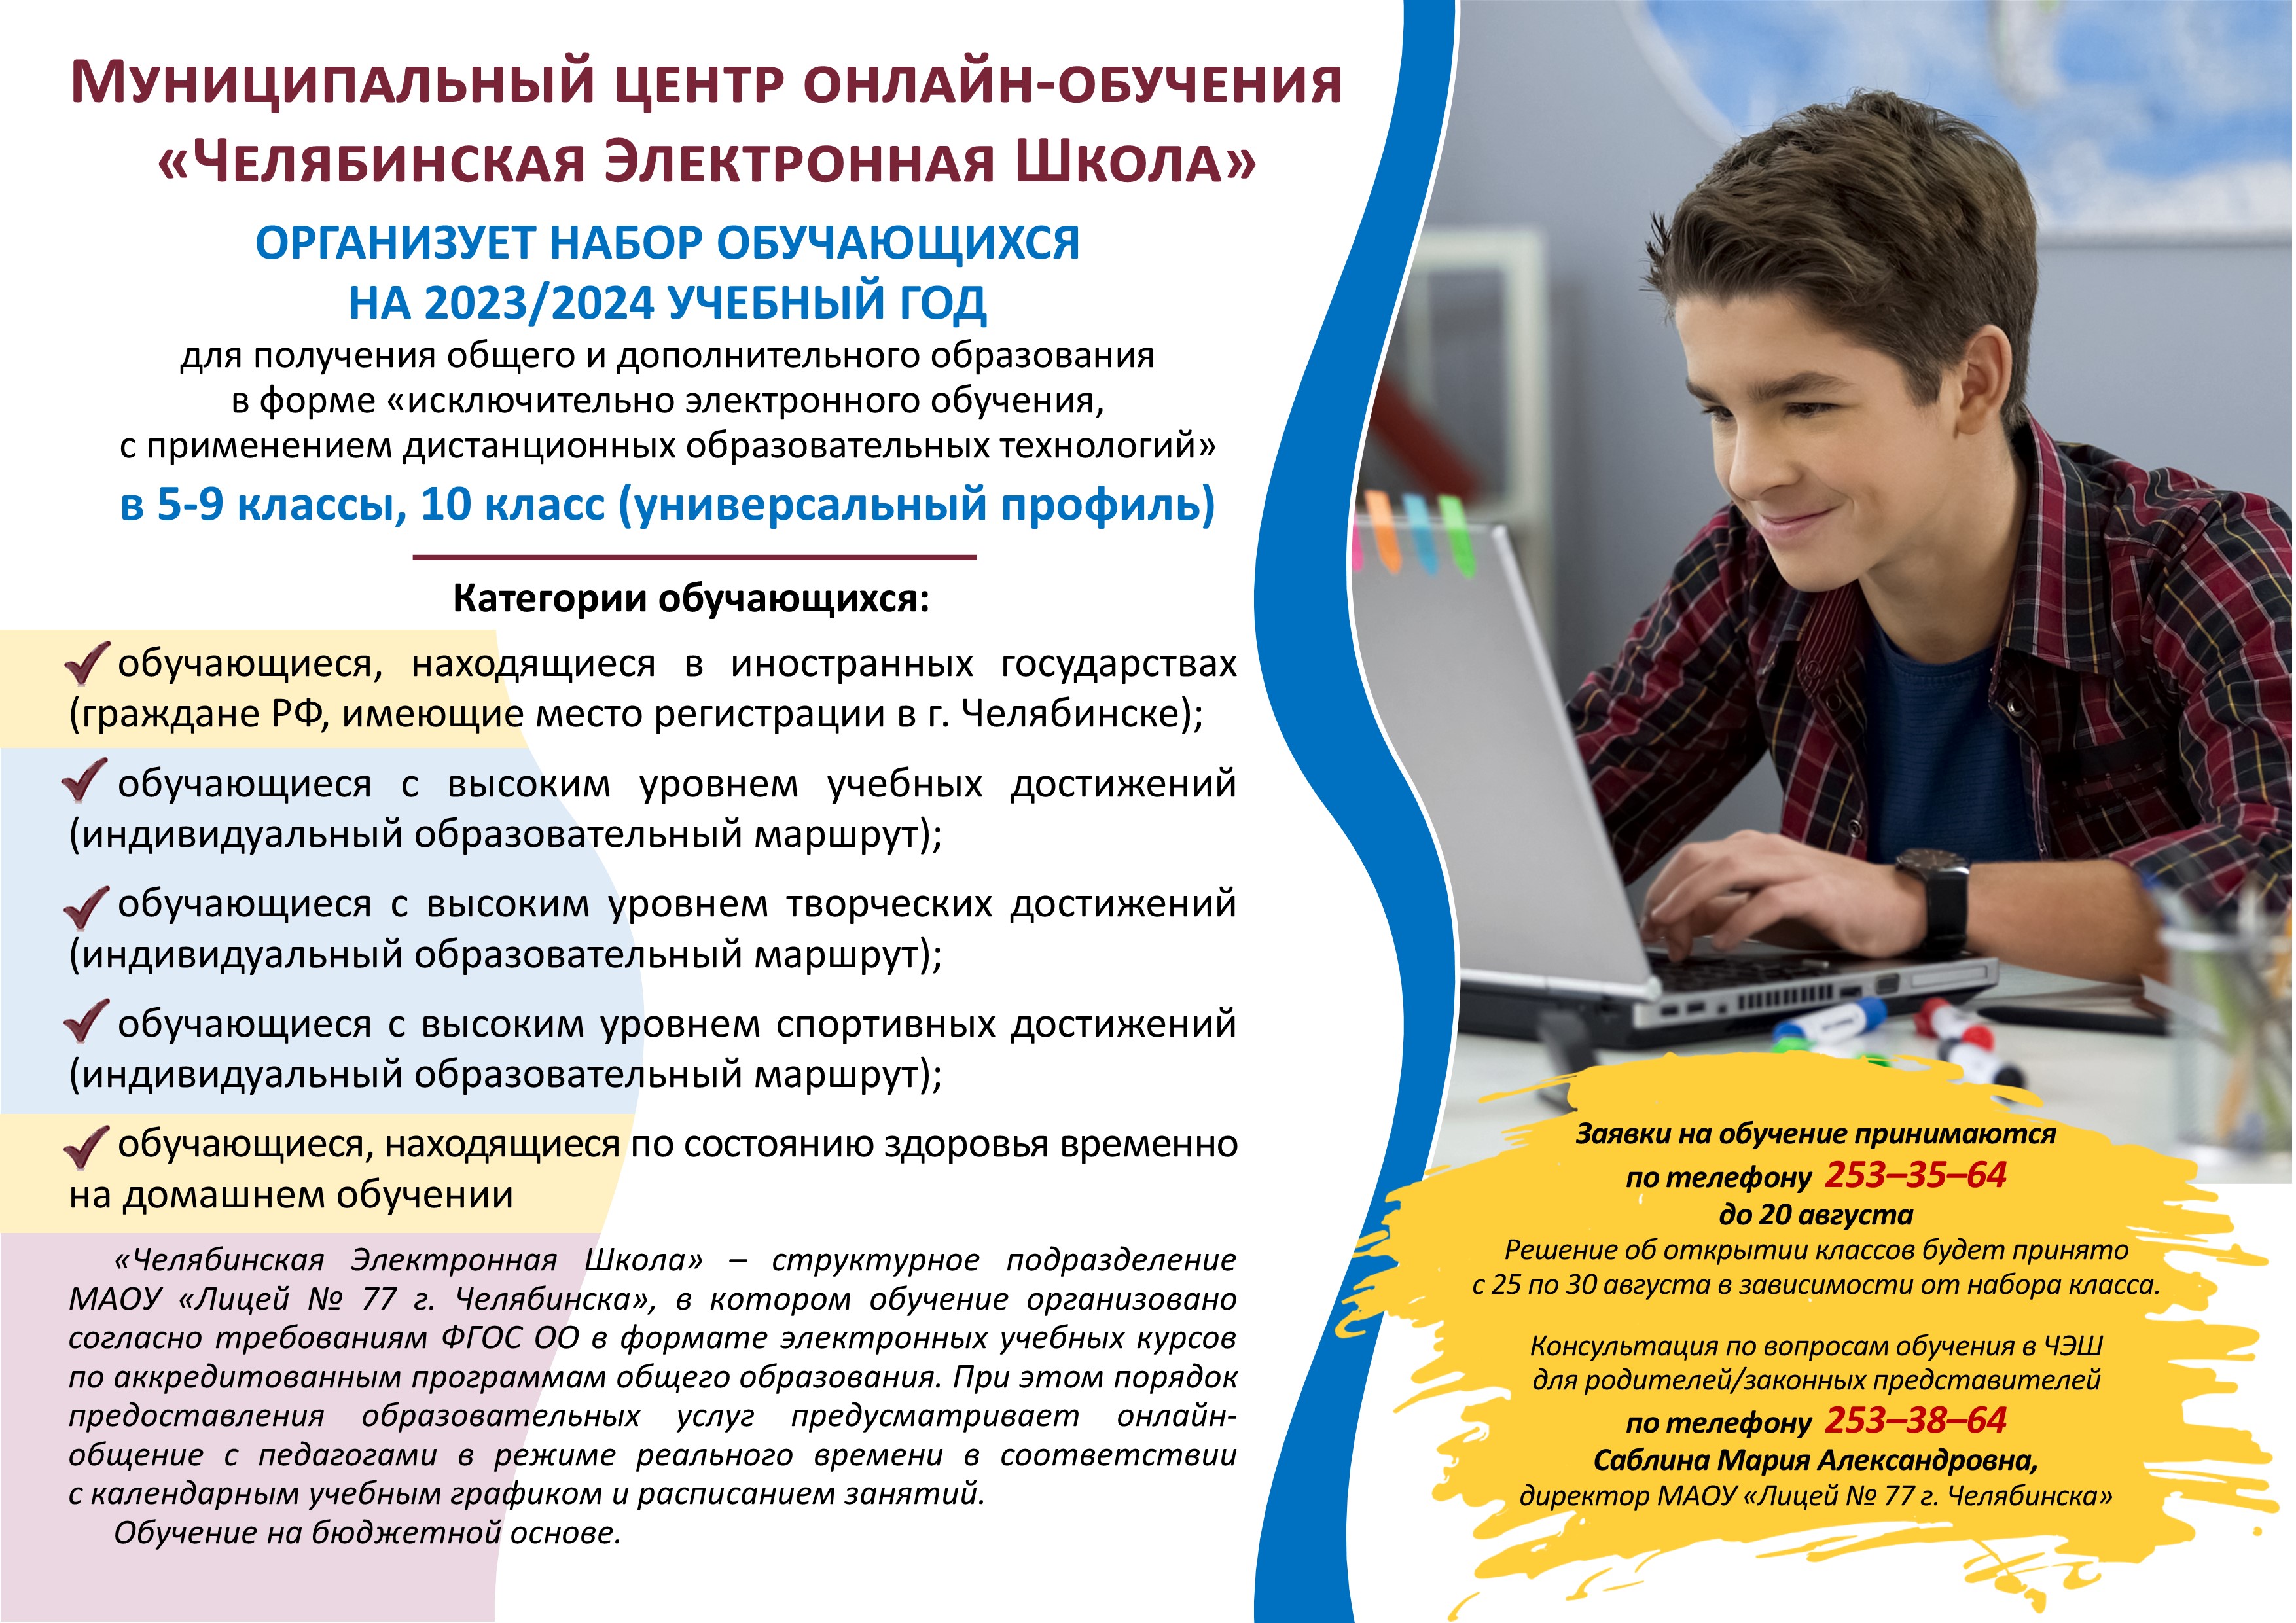 Учебный год 2023-2024. Курсы в Челябинске для школьников. Образование в Челябинске после 9 класса. Компьютерные курсы в Челябинске.